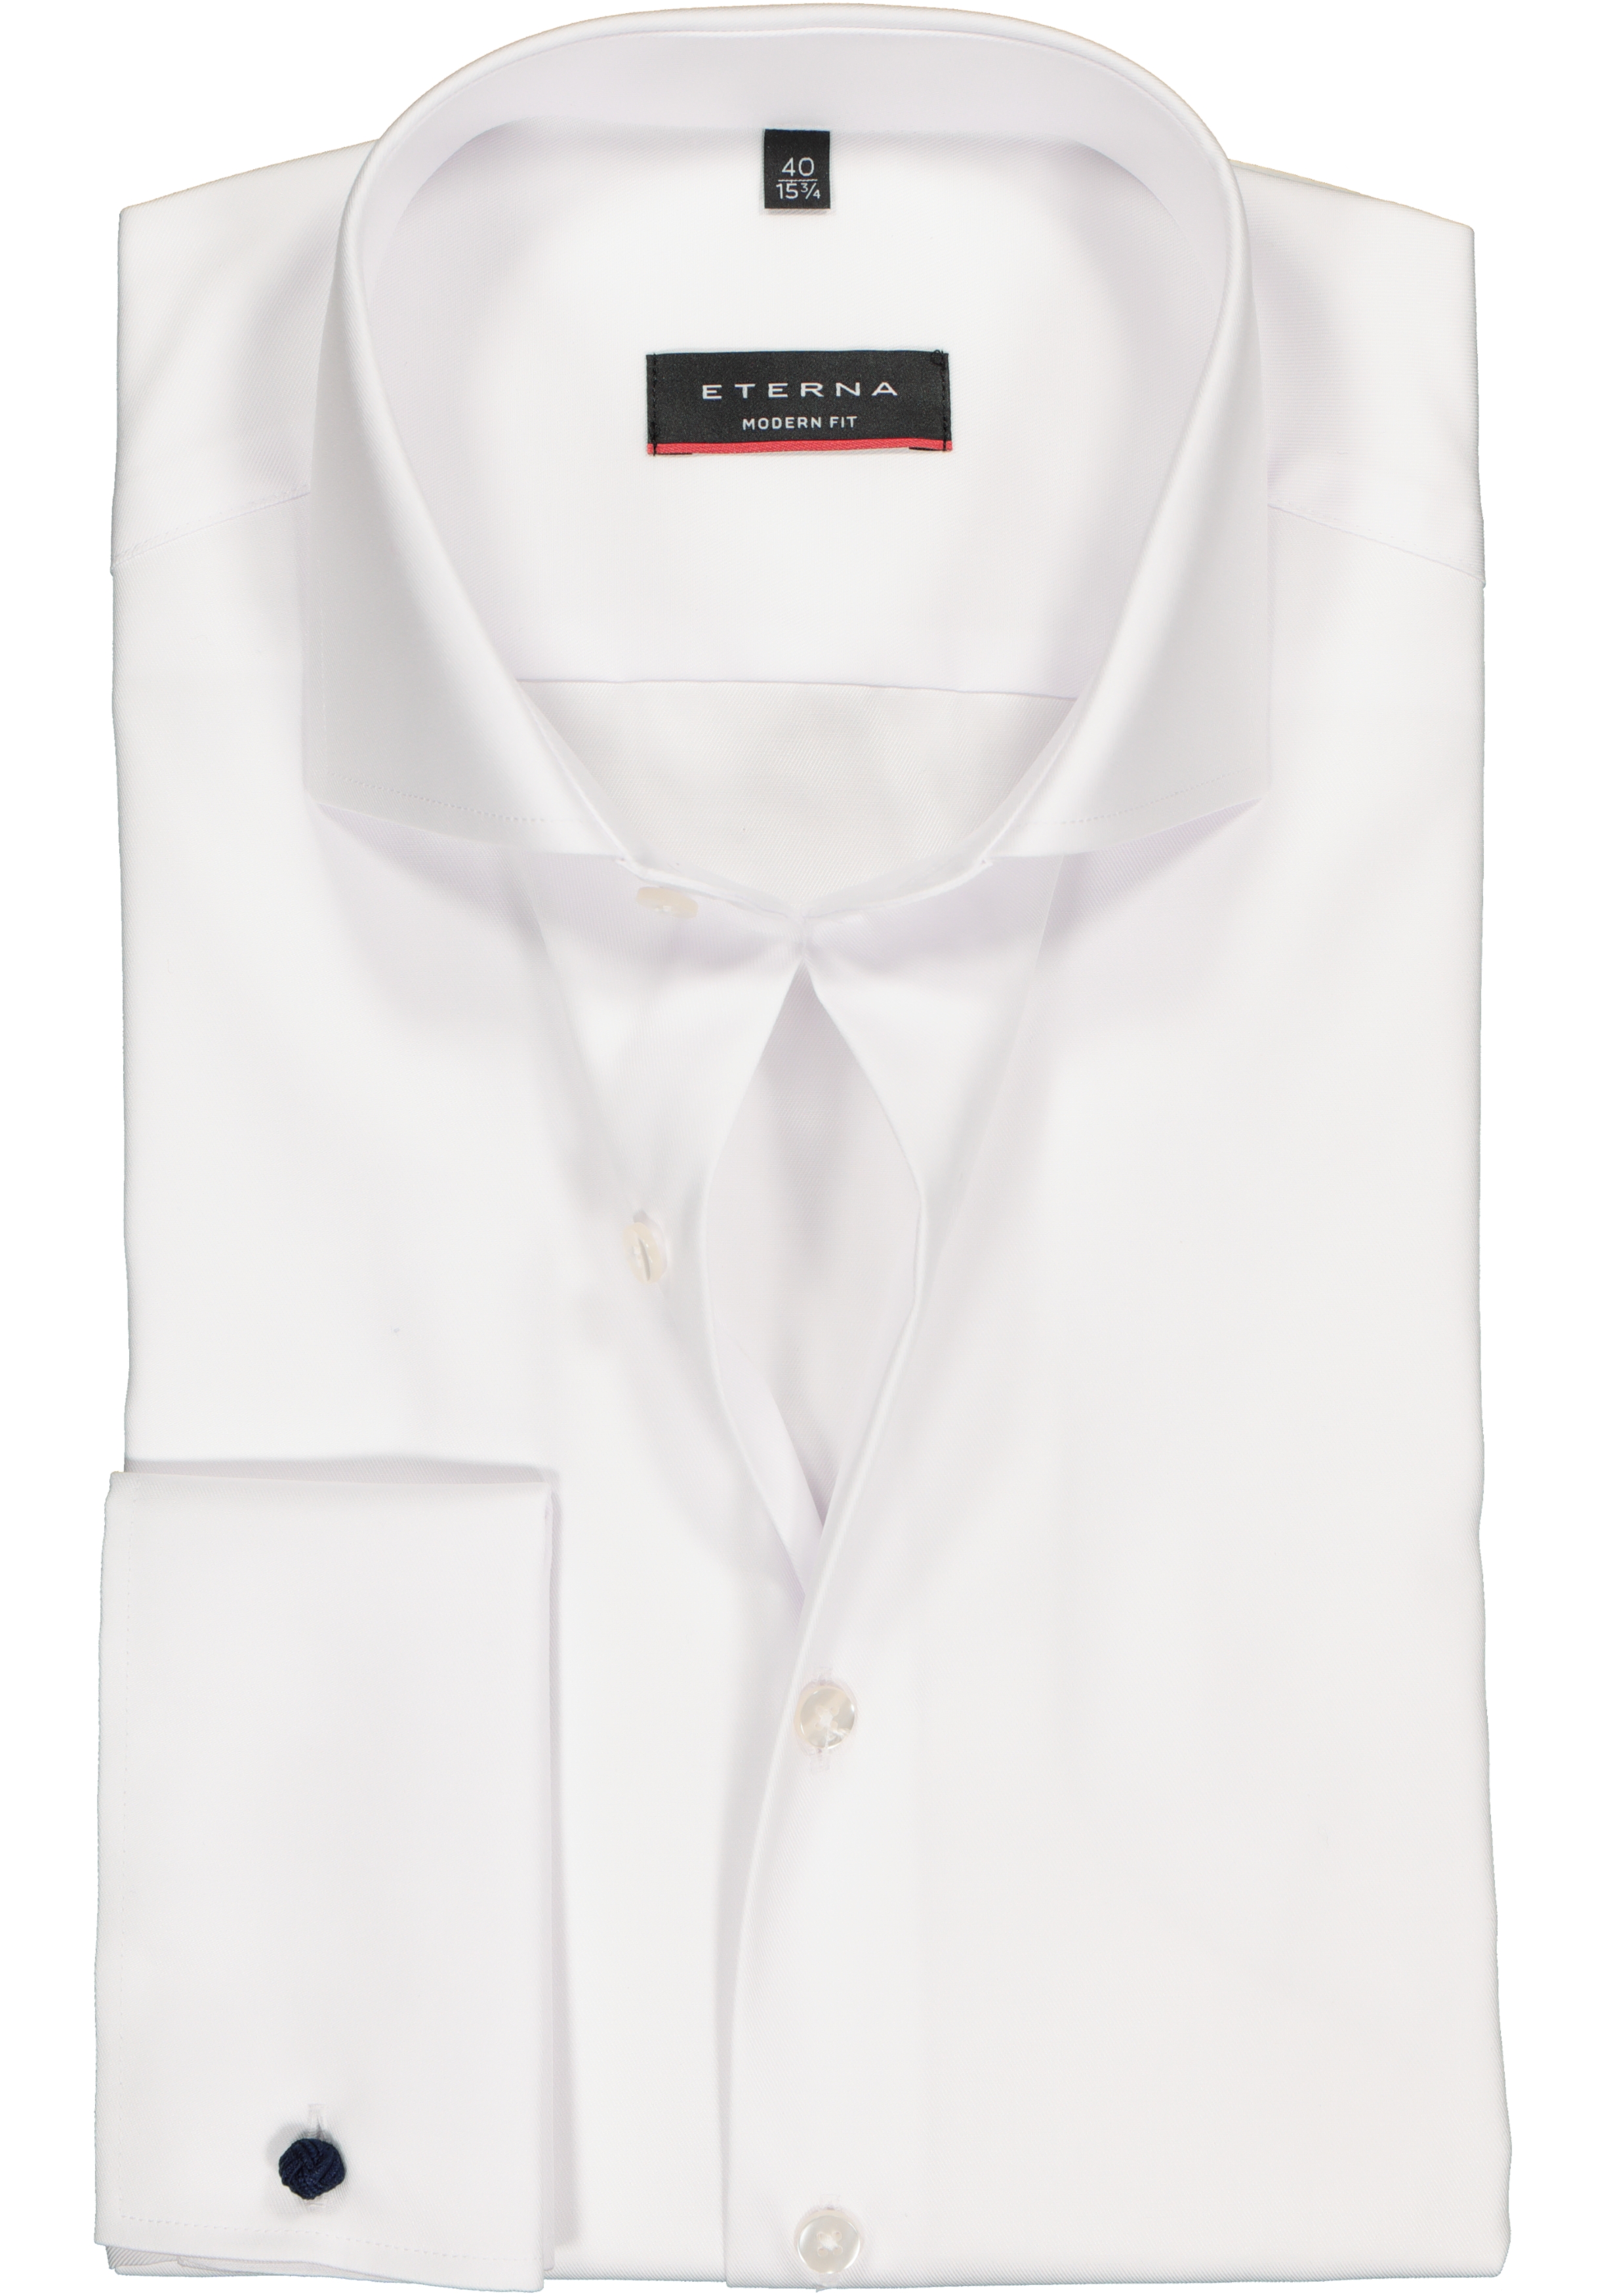 ETERNA modern fit overhemd, dubbele manchet, niet doorschijnend twill heren overhemd, wit